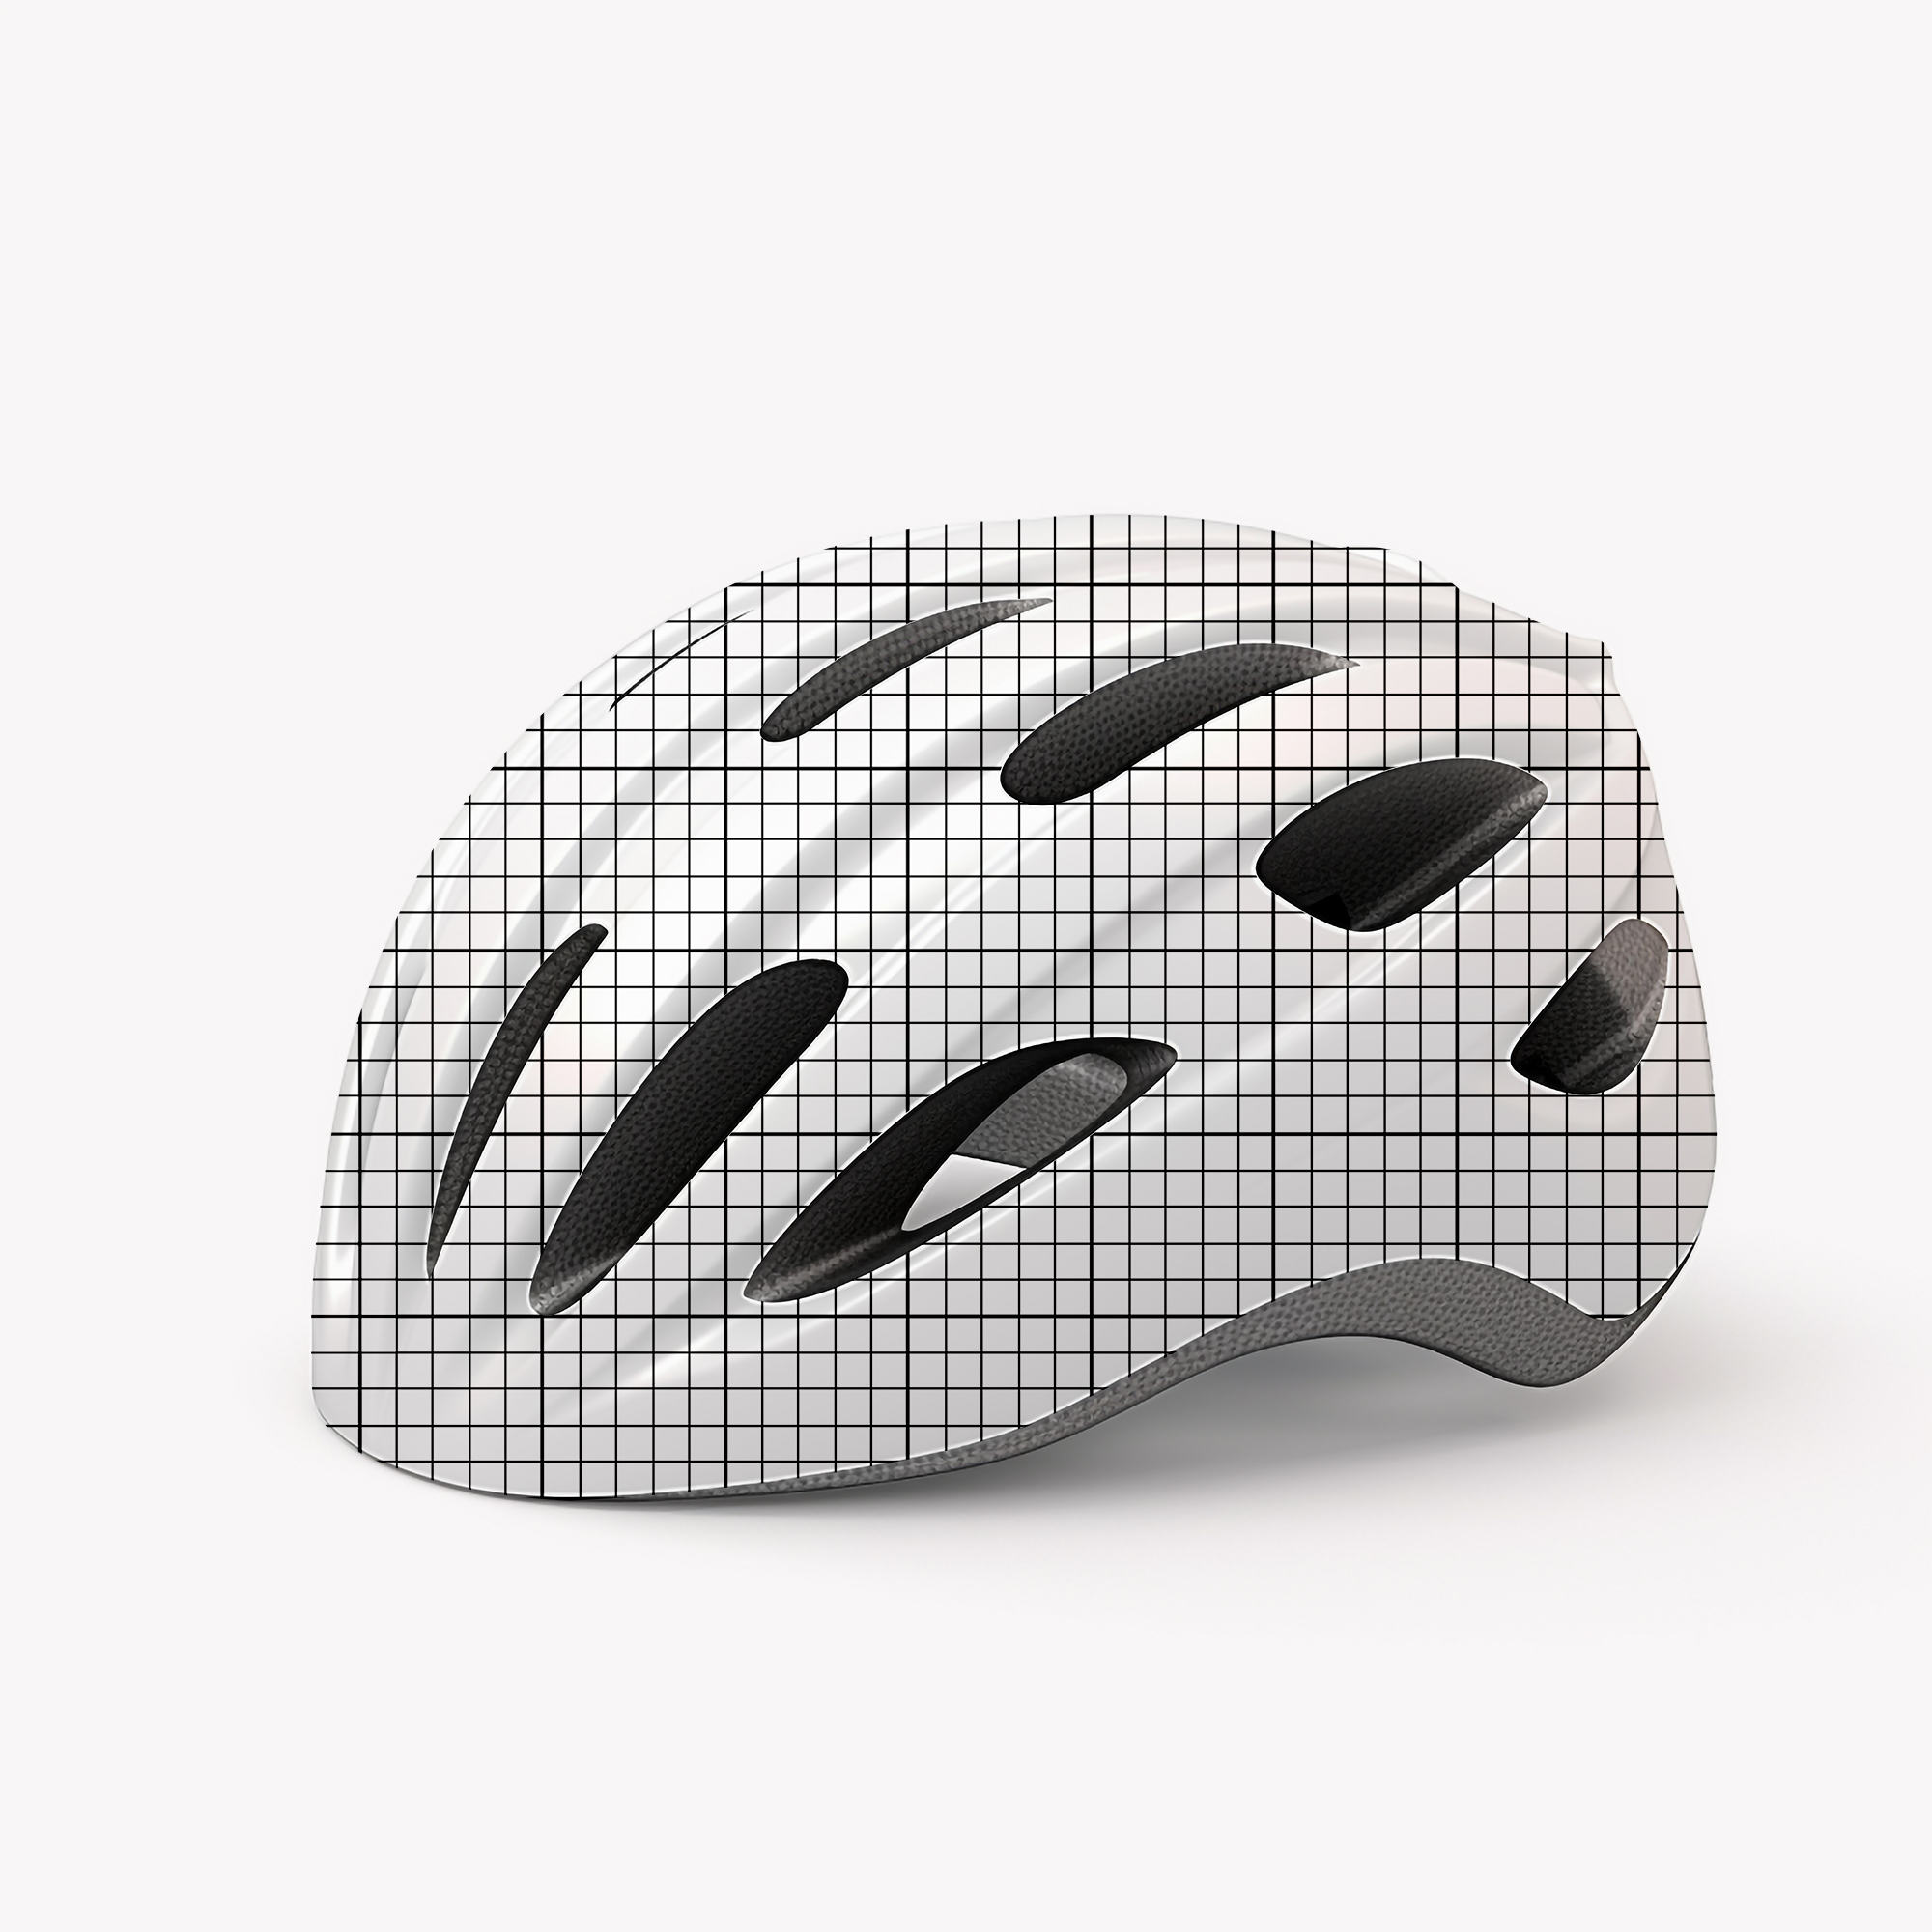 Free Download Bicycle Helmet mockup PSD